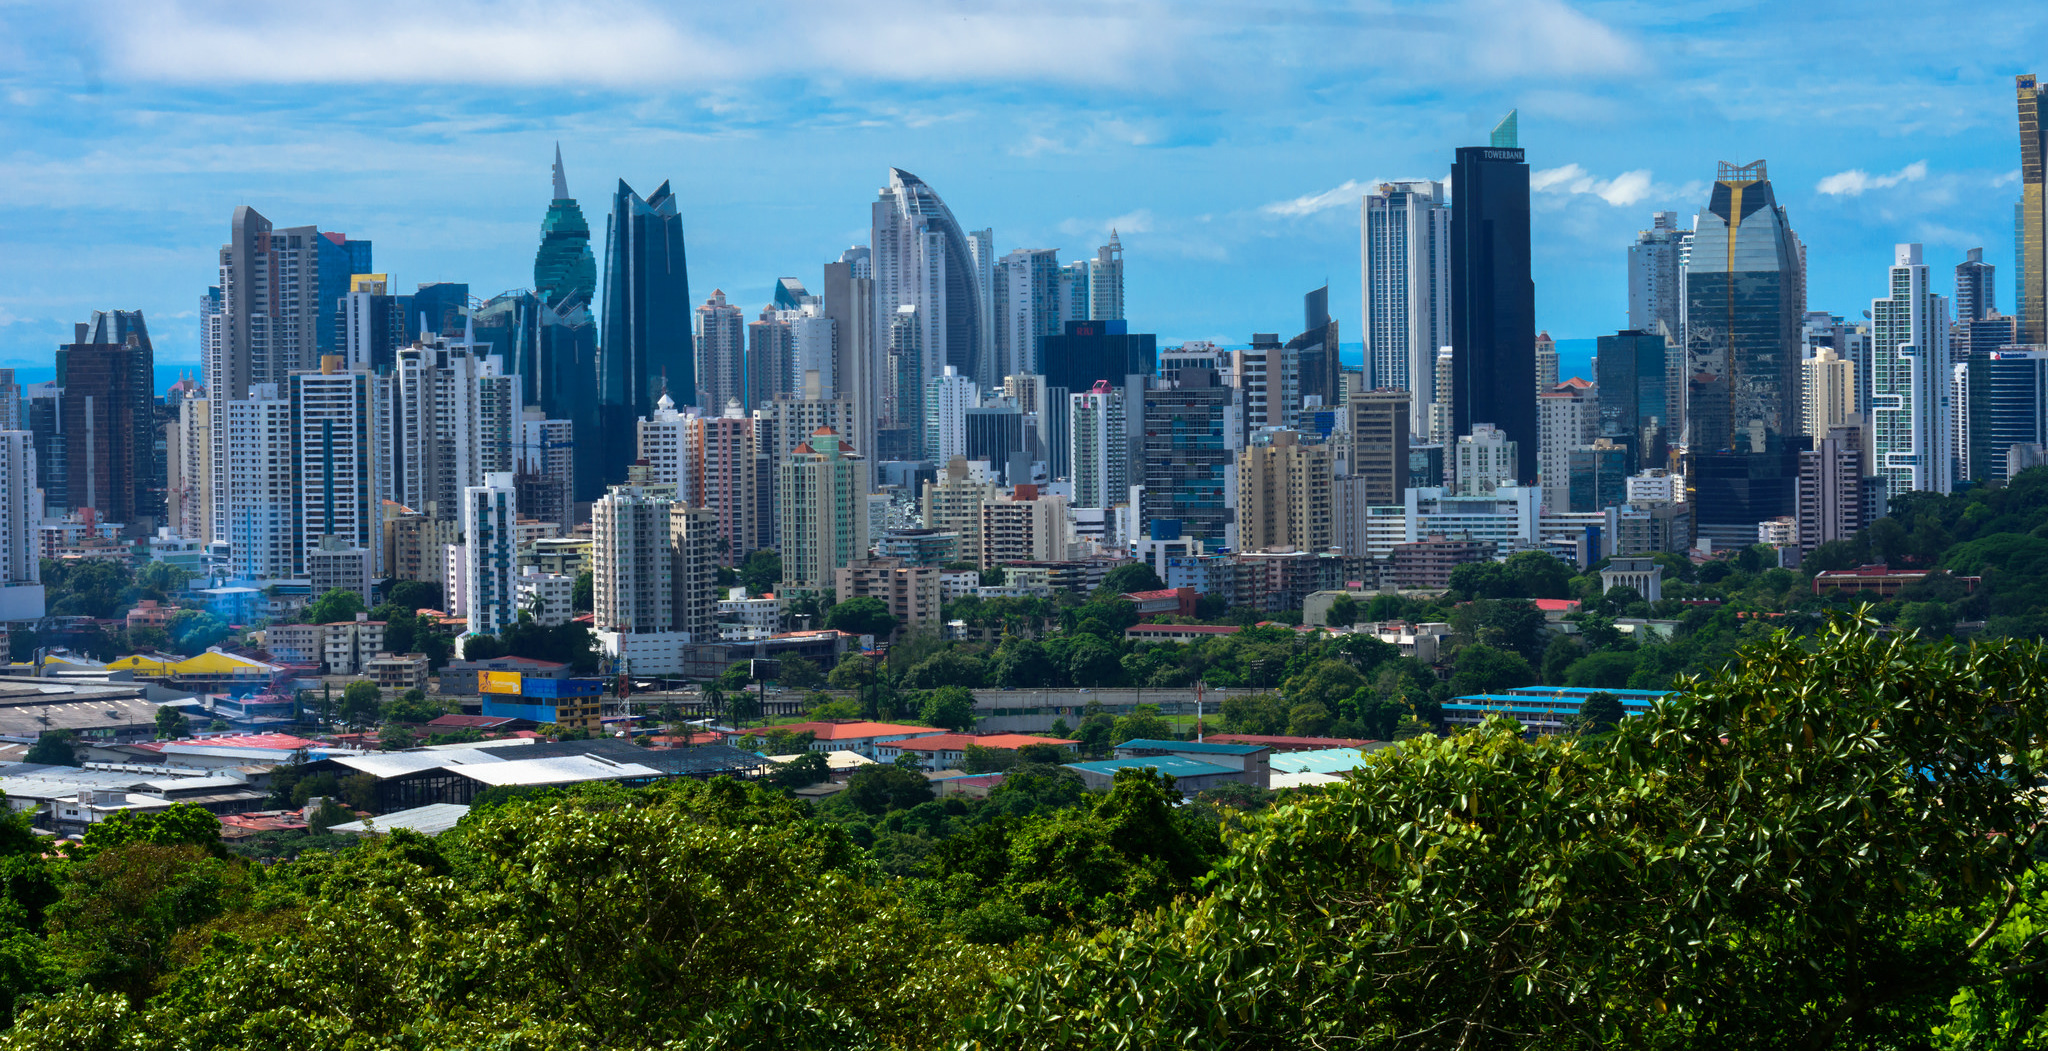 Panama-City-1.jpg